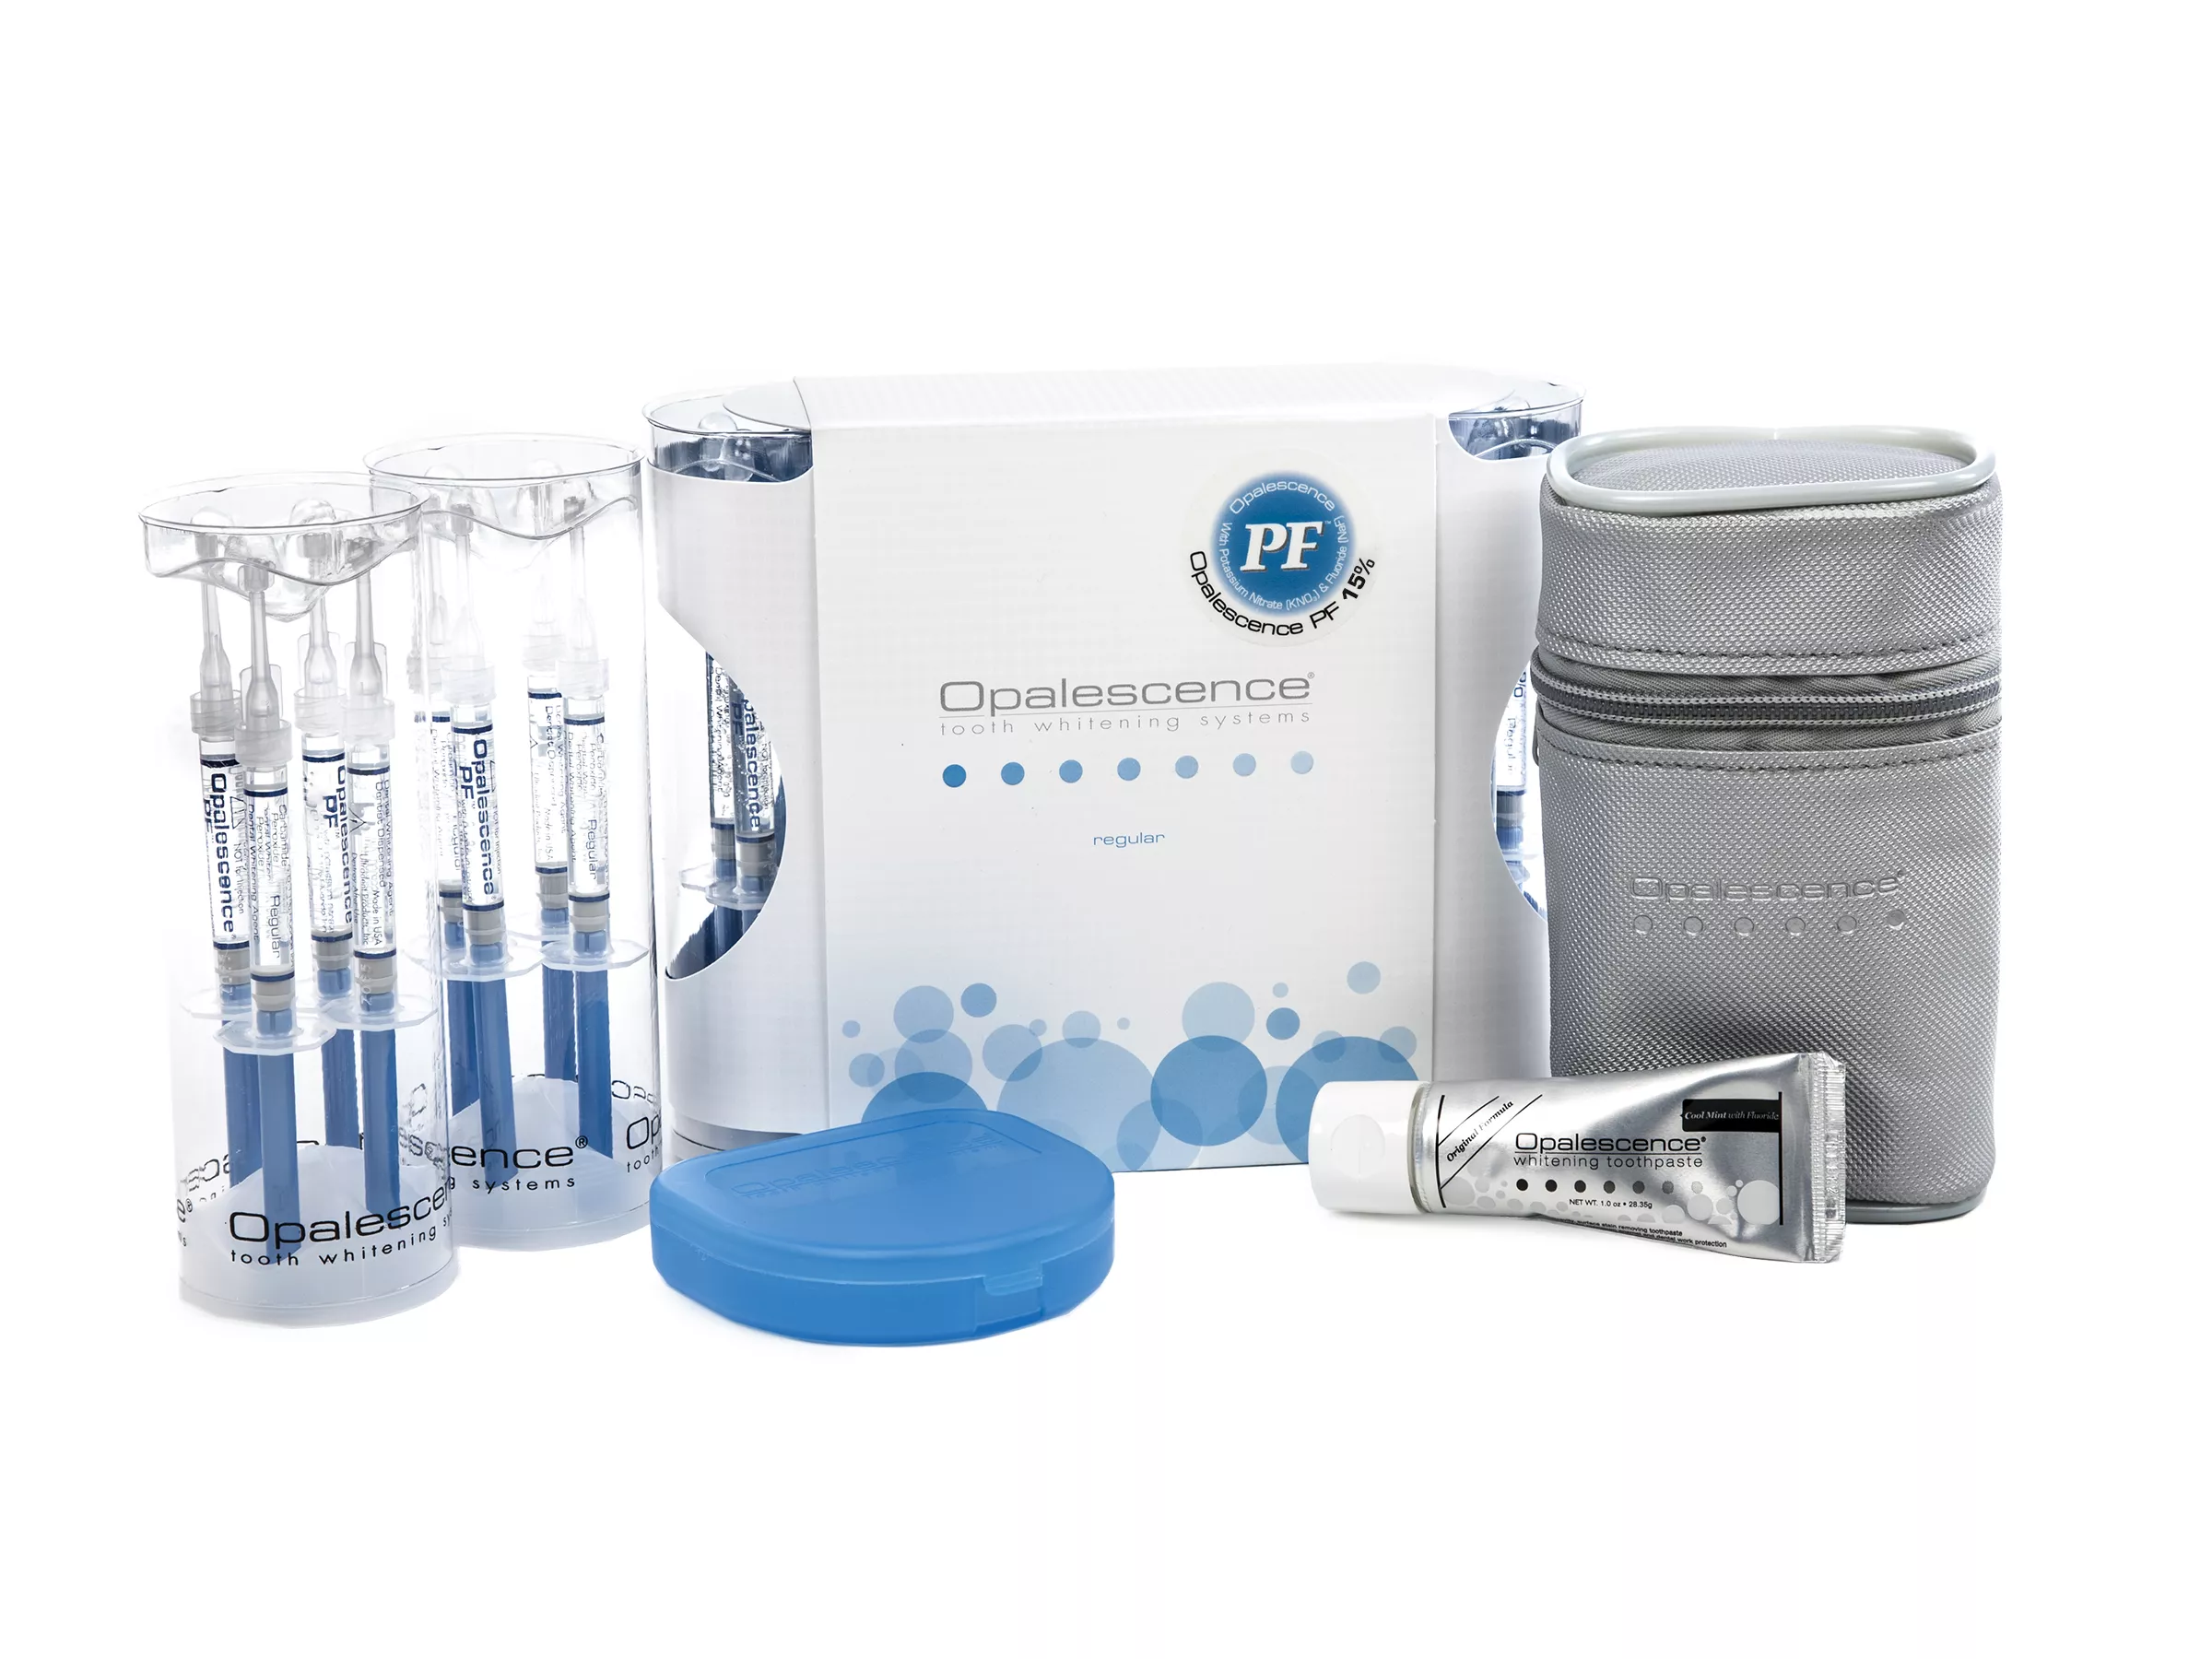 Opalescence PF 15% Regular Patient Kit - набор для домашнего отбеливания зубов